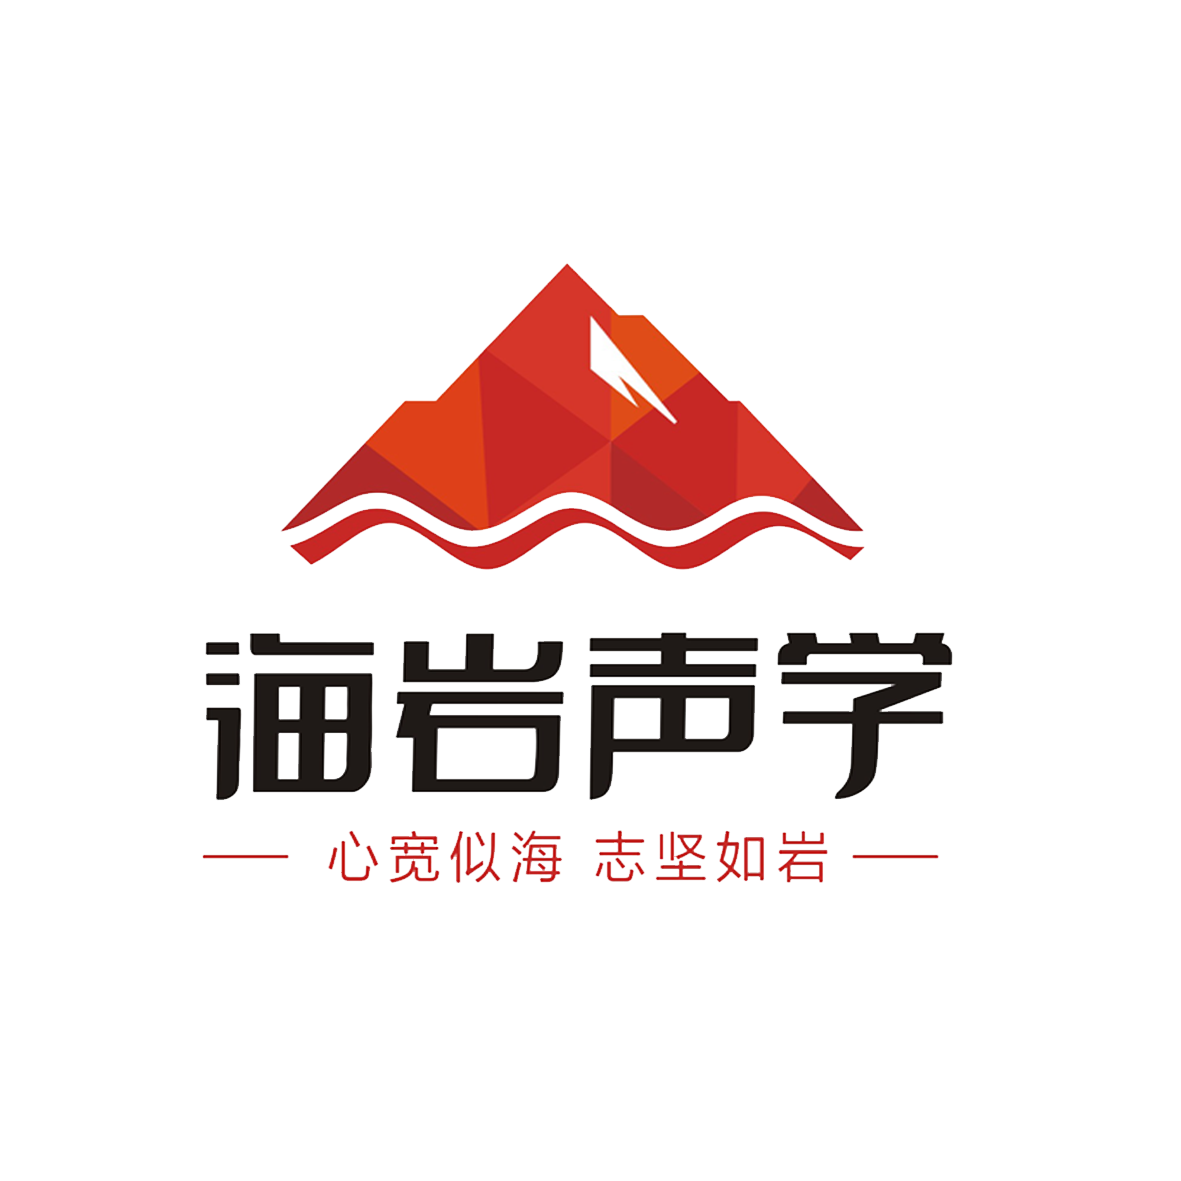 同江会议室 四川海岩声学科技有限公司